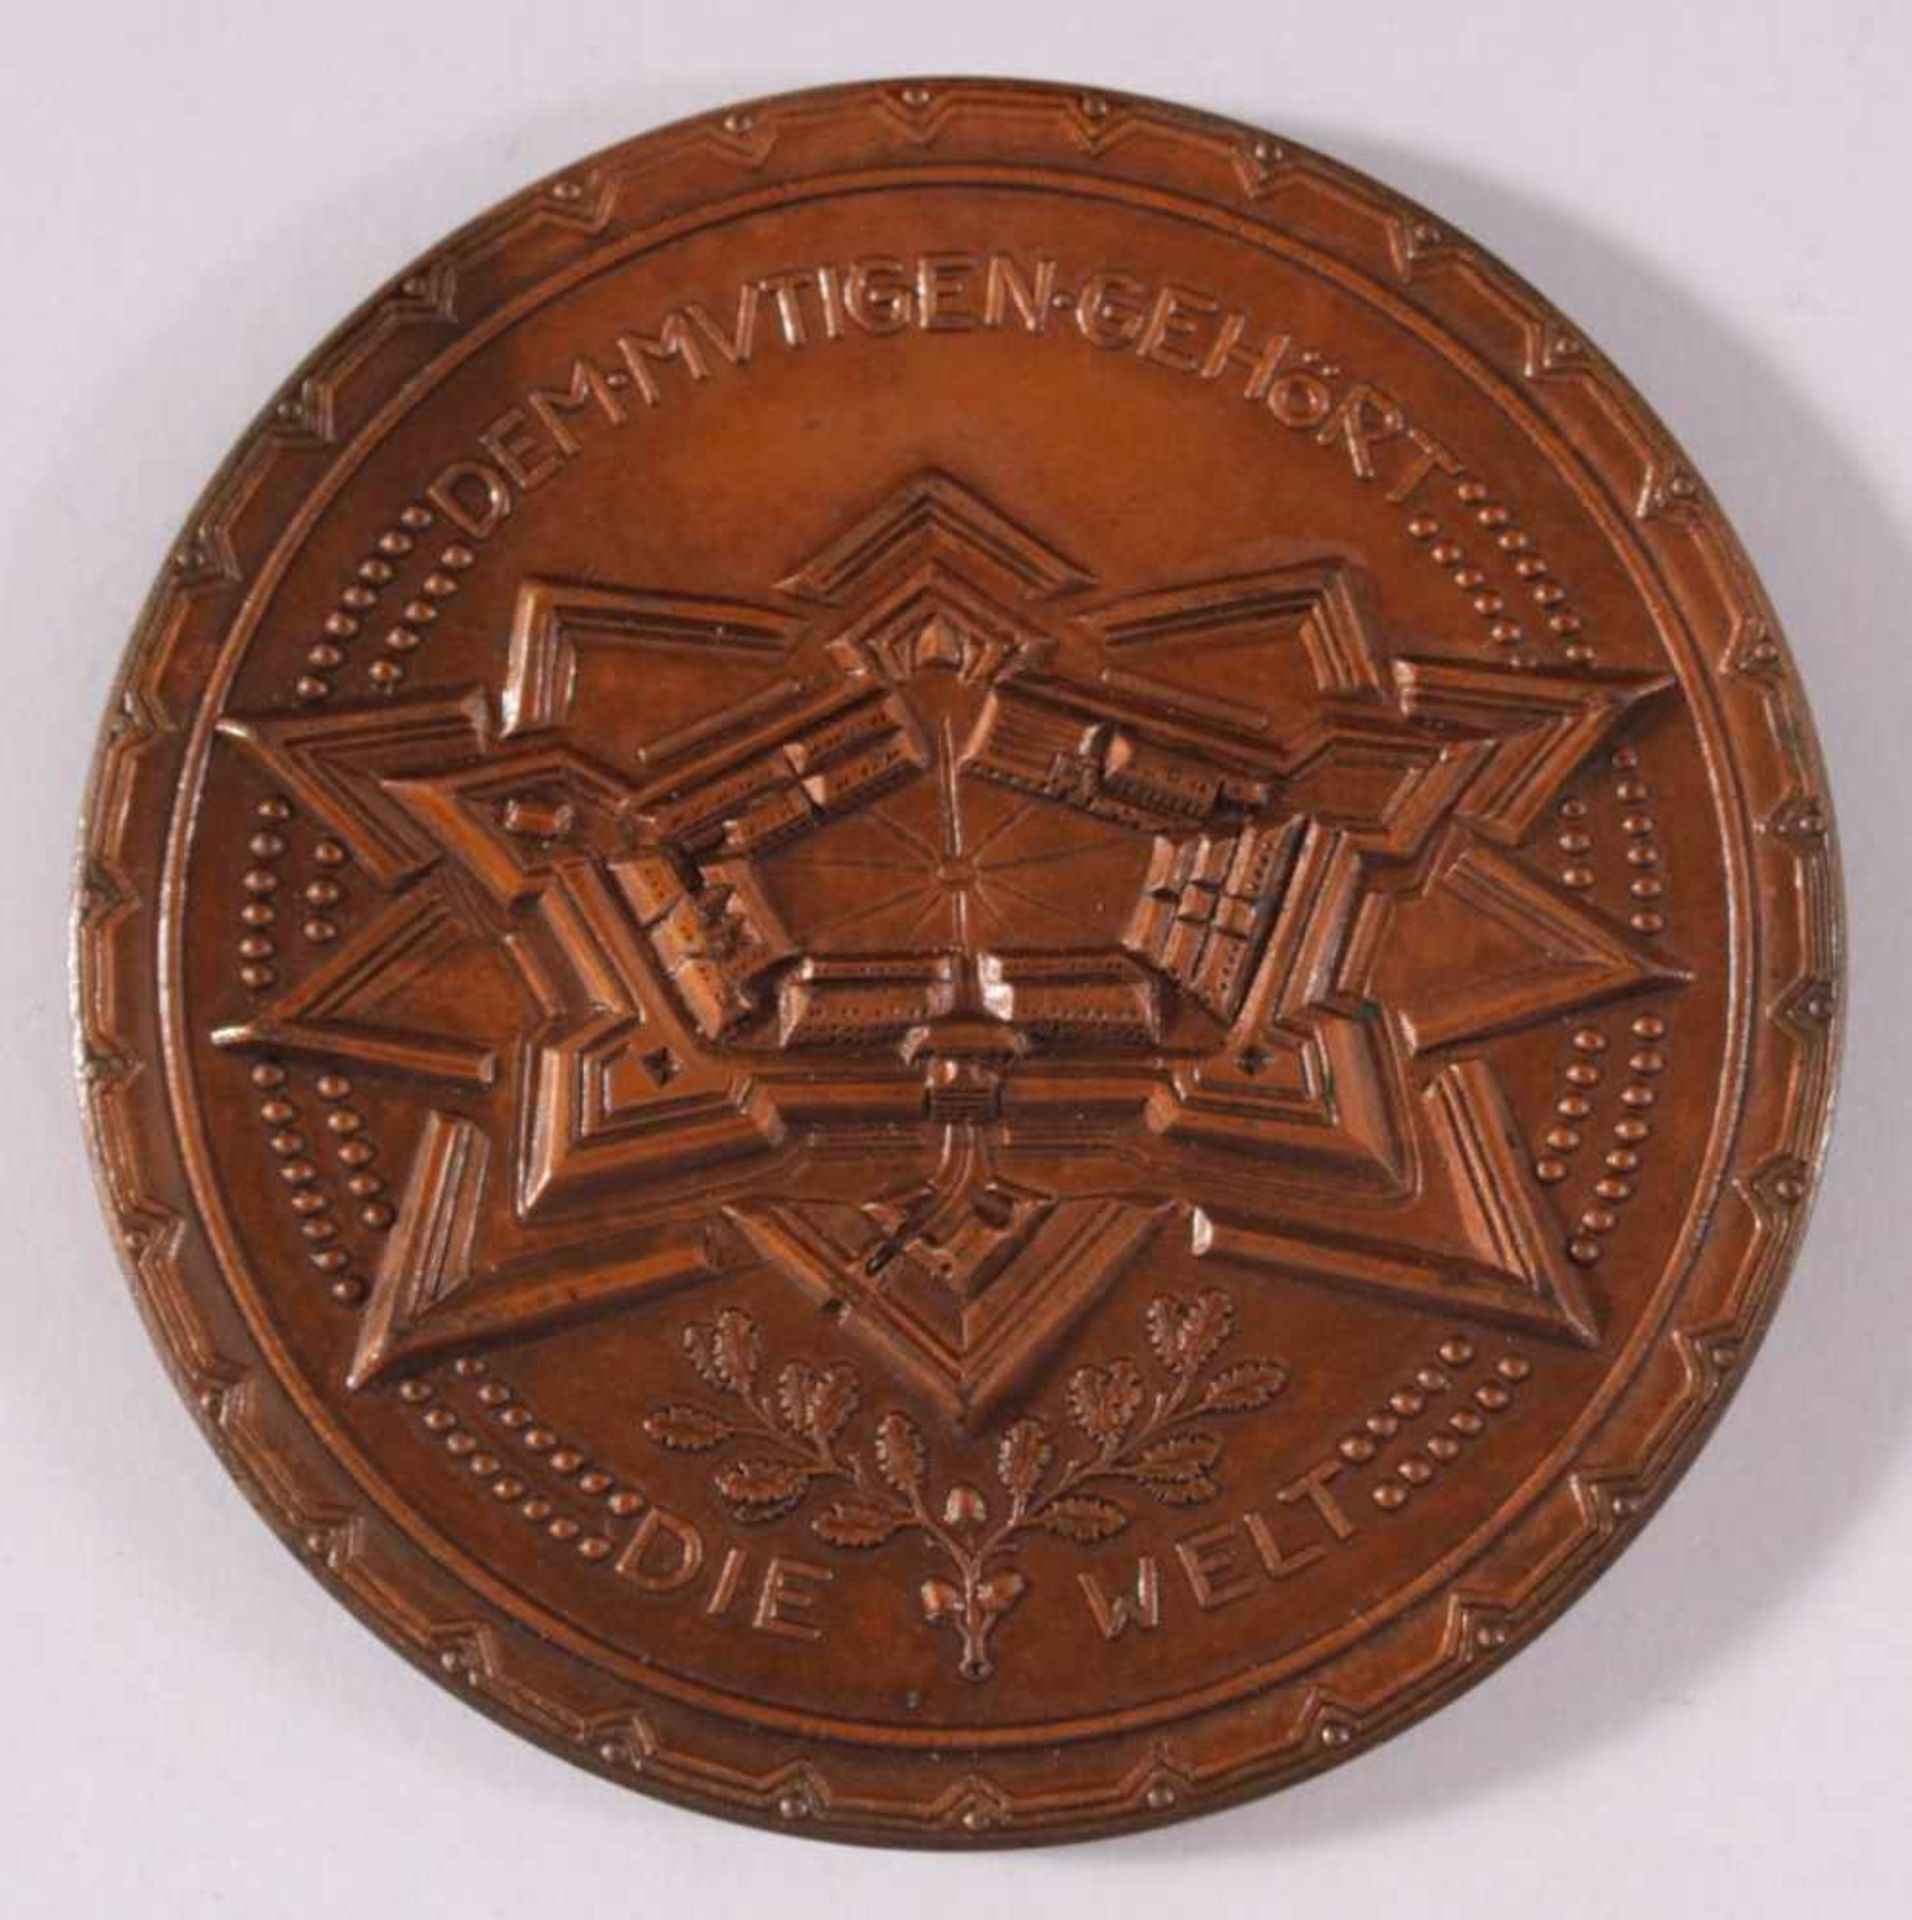 Medaille, Lille, Rupprecht Kronprinz von Bayern, 19146. Armee, 12.10.1914, den Mutigen gehört die - Bild 2 aus 2